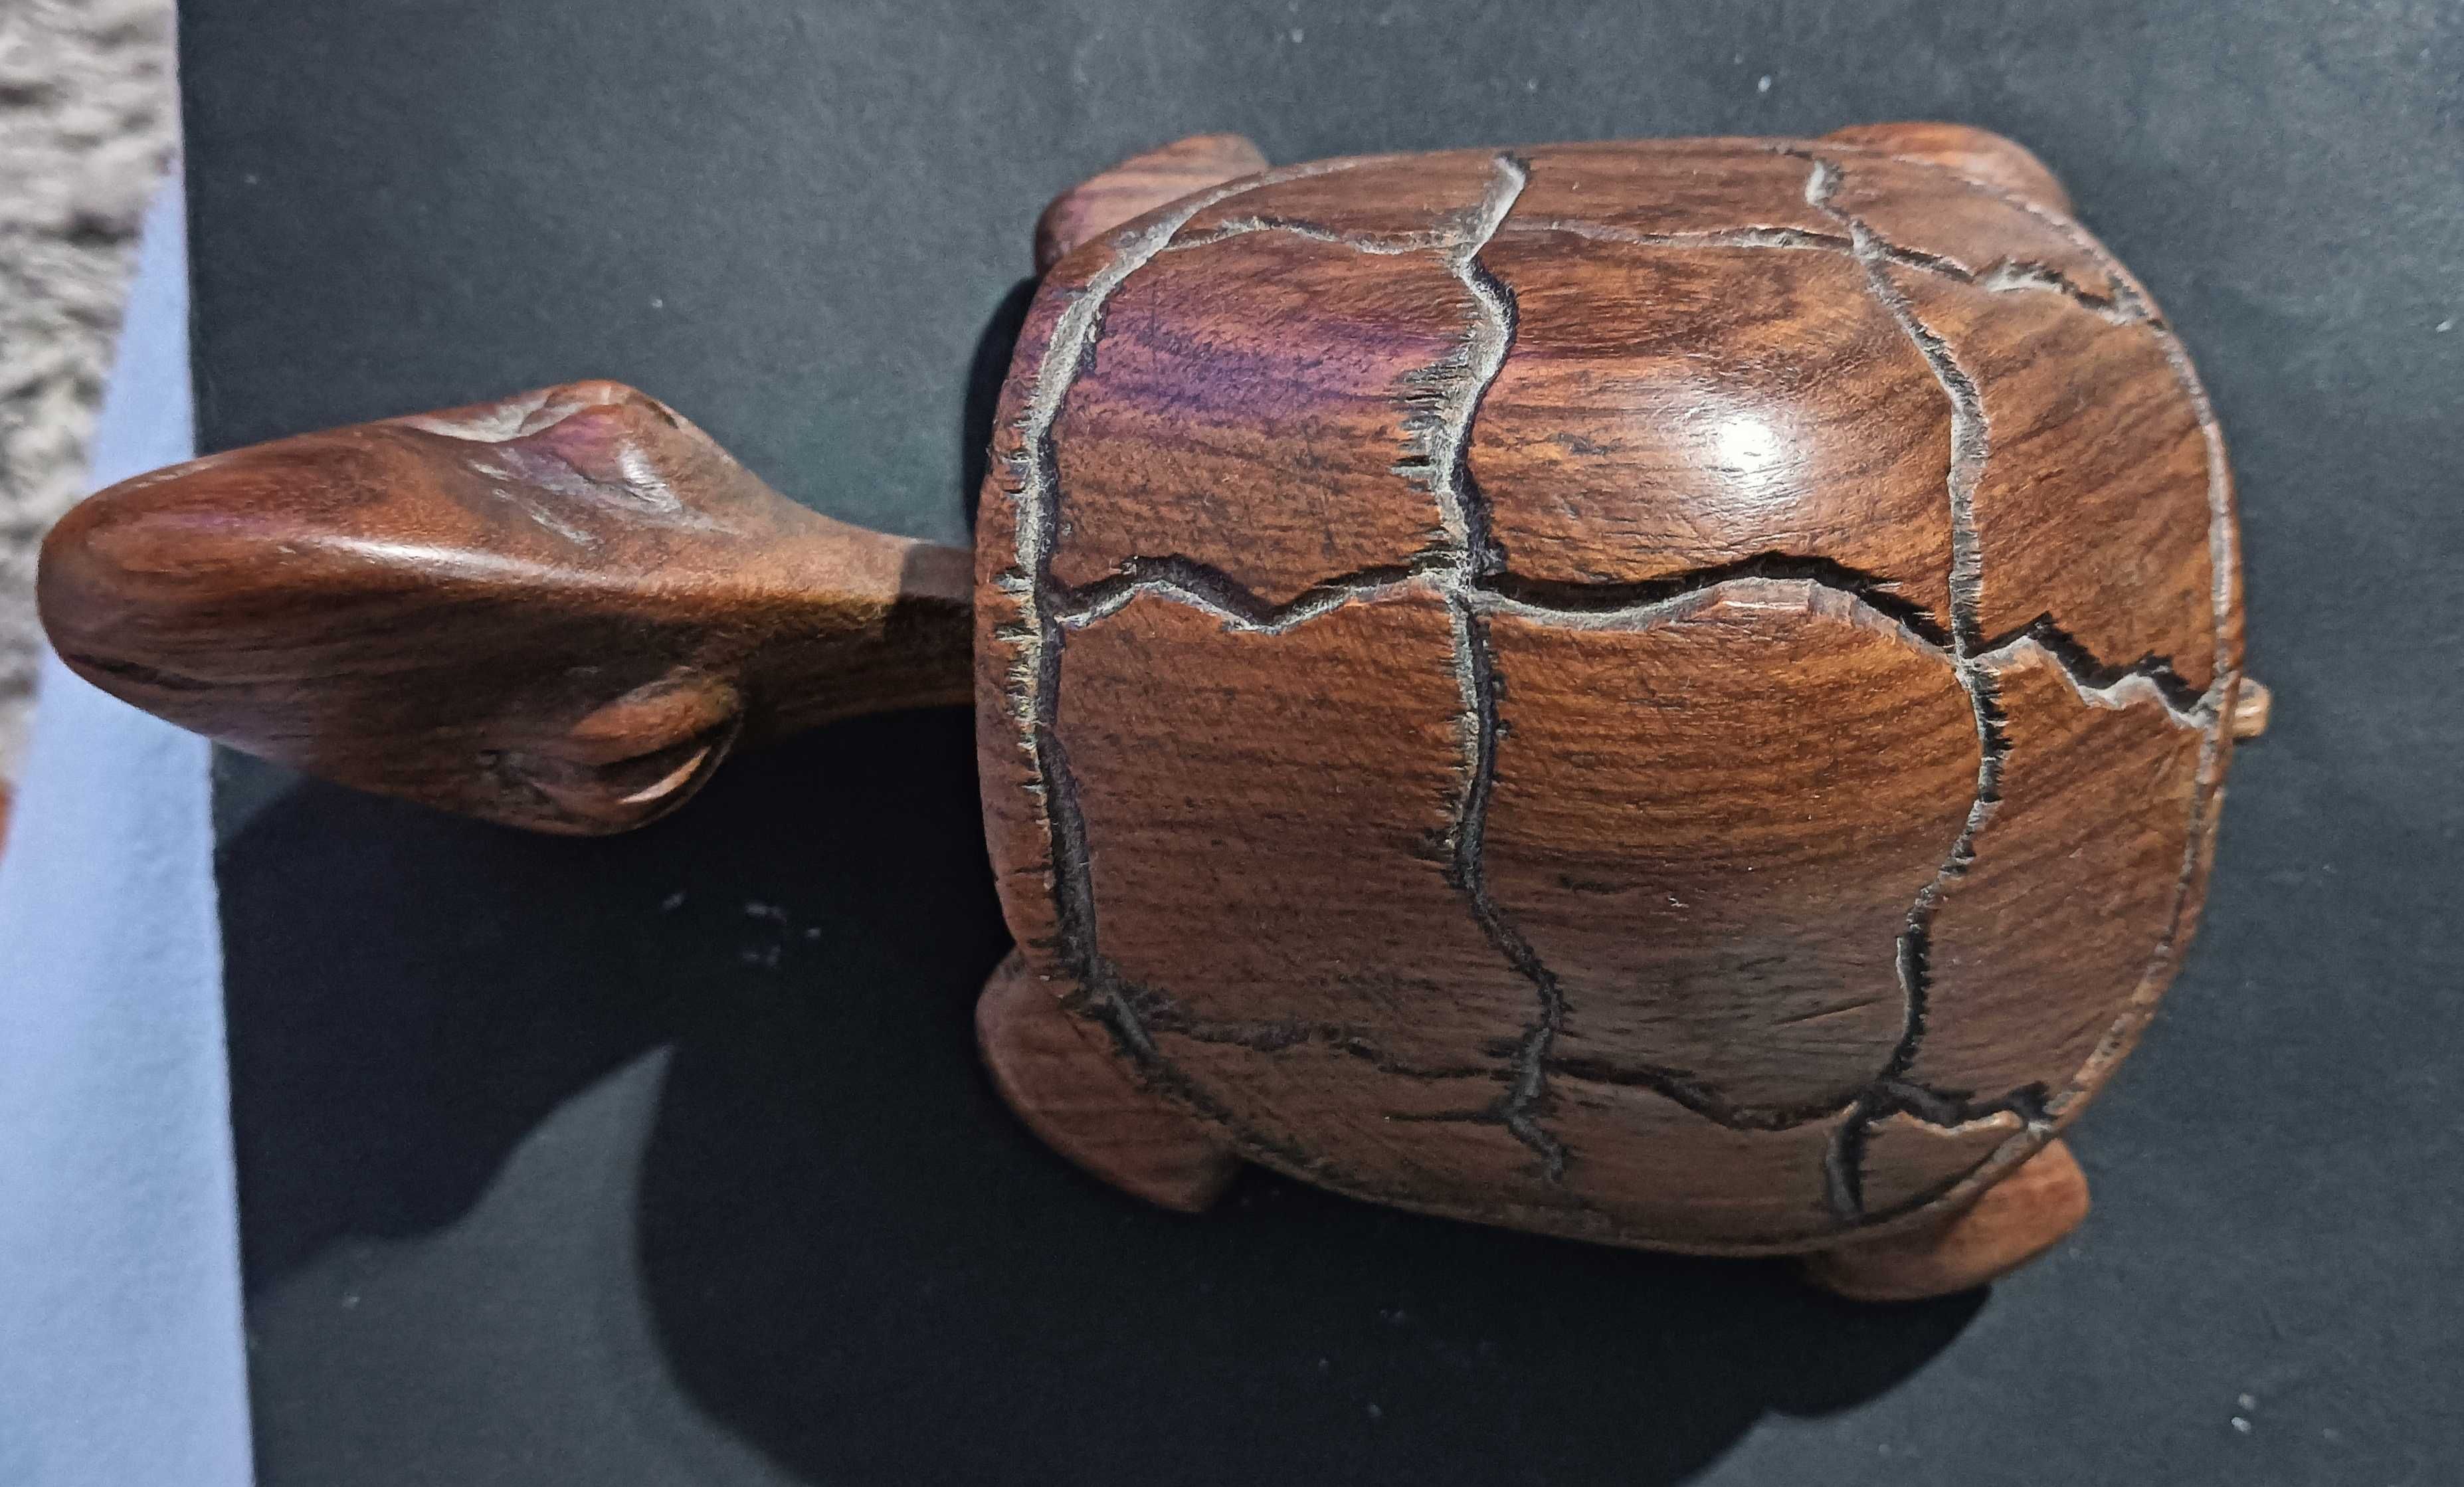 Tartaruga em madeira feita a mão.